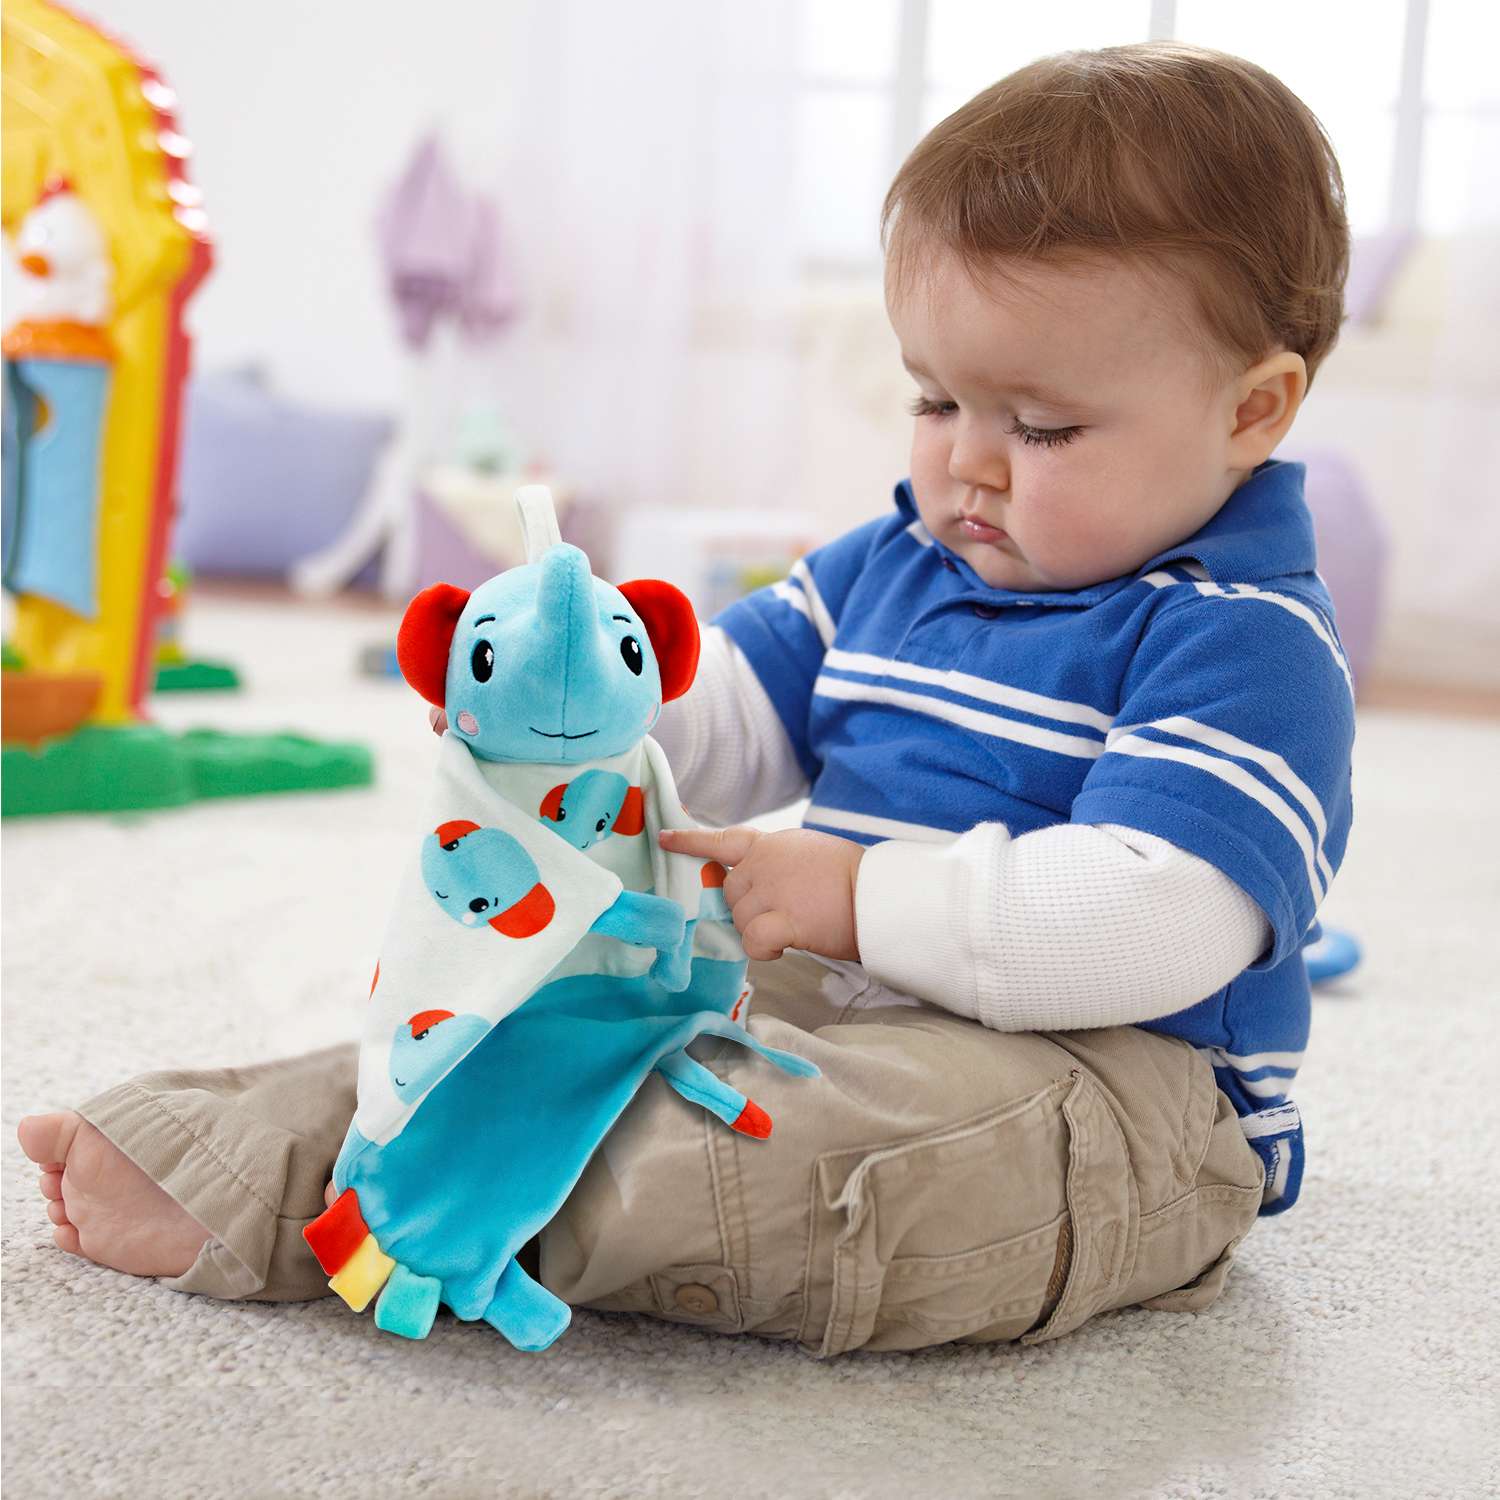 Комфортер плюшевый Fisher Price Слоненок развивающая мягкая игрушка для детей 0+ - фото 3